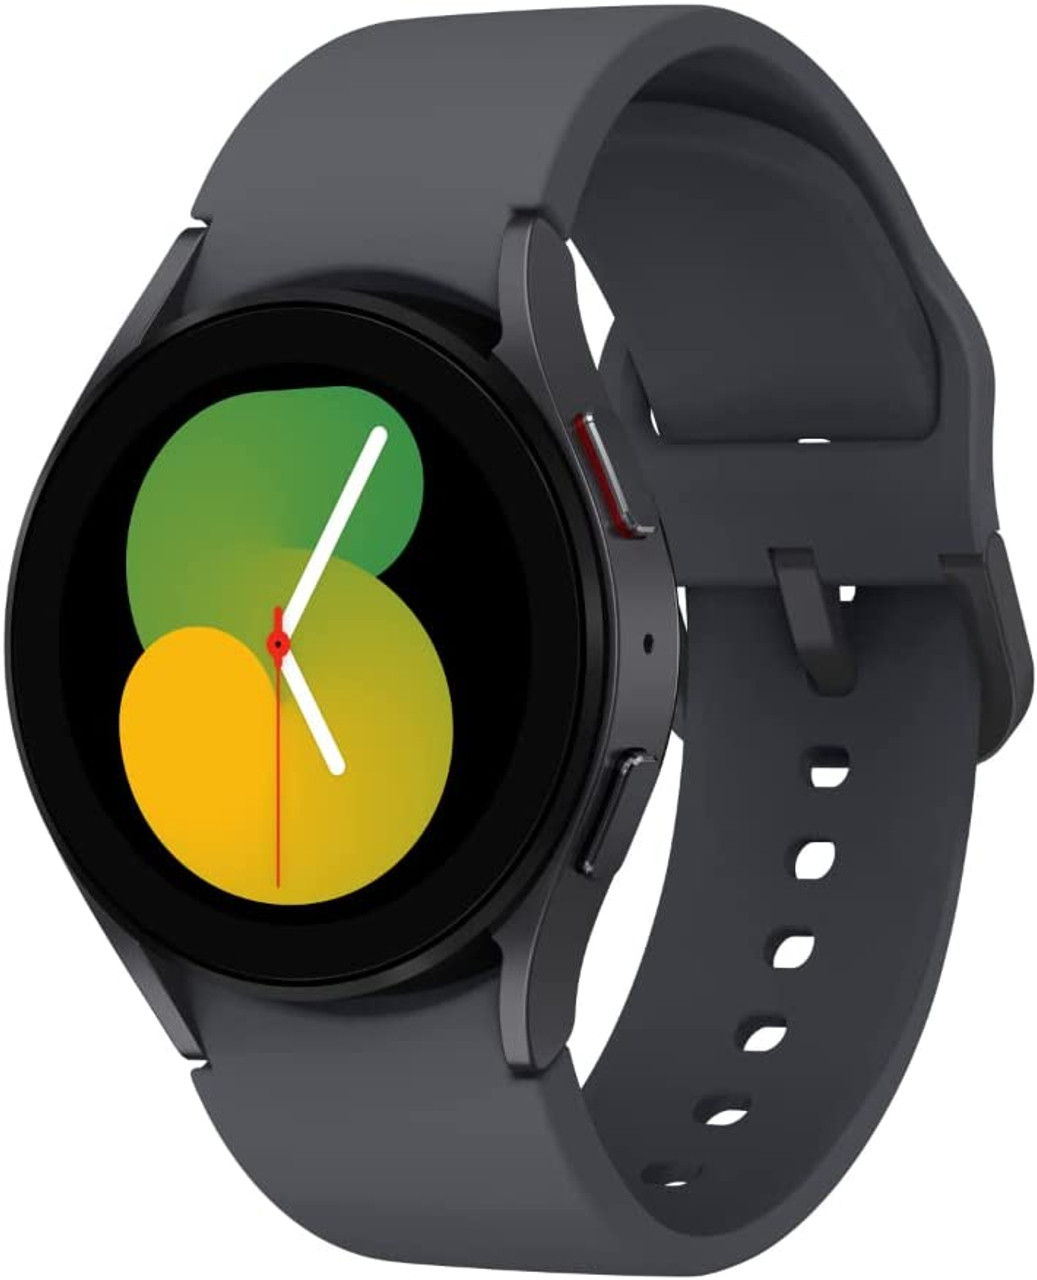 Samsung Galaxy Watch 5 Smartwatch مع الجسم ، والصحة ، واللياقة البدنية ،  ومتتبع النوم ، وبطارية مُحسّنة ، وزجاج كريستال ياقوتي ، وتتبع GPS مُحسّن